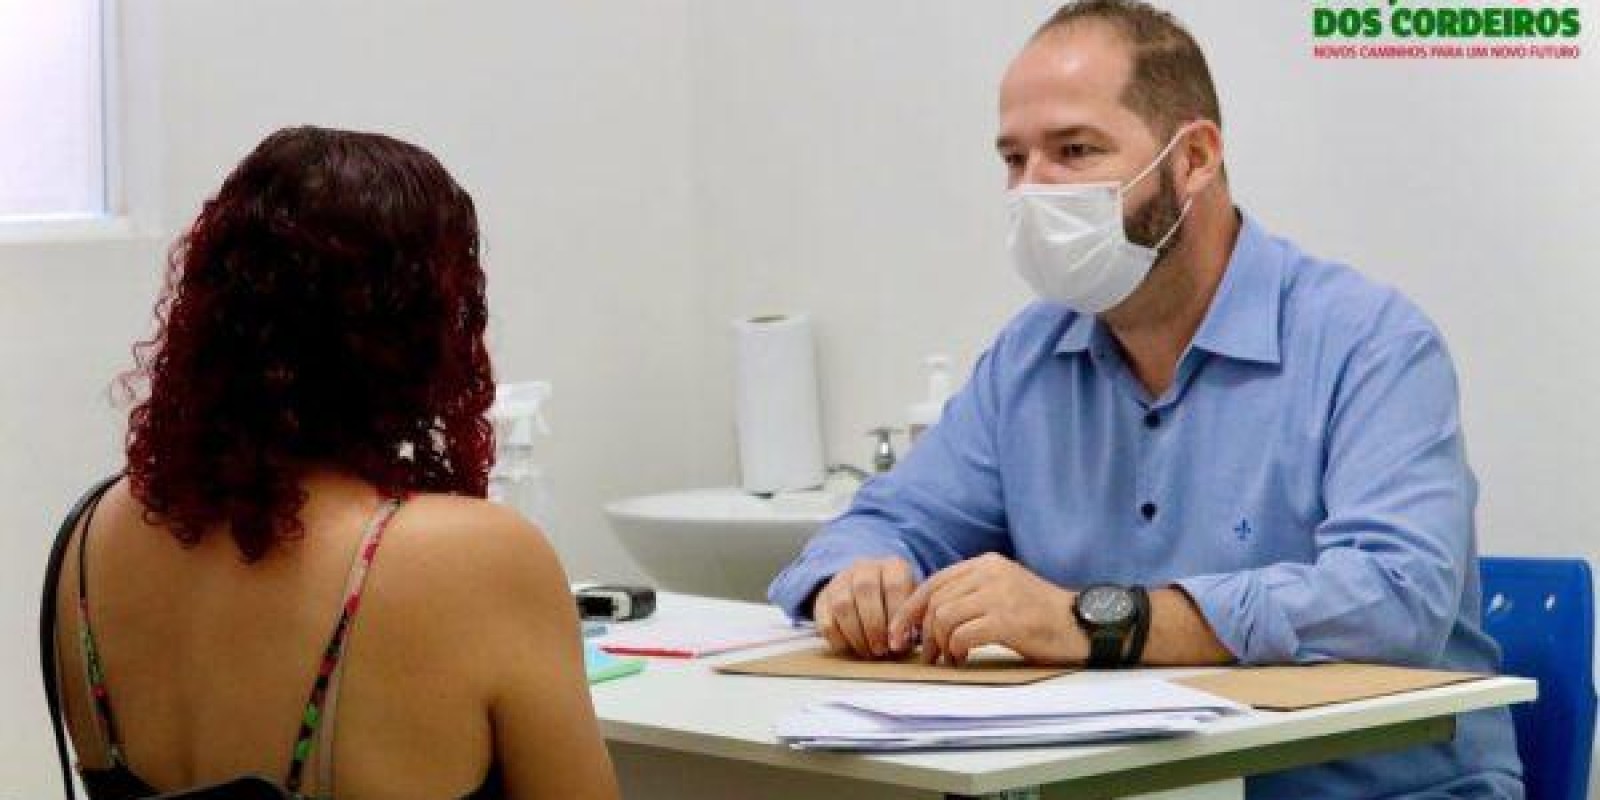 Prefeitura de São José dos Cordeiros contrata psiquiatra e aumenta quadro de especialistas que atuam no município